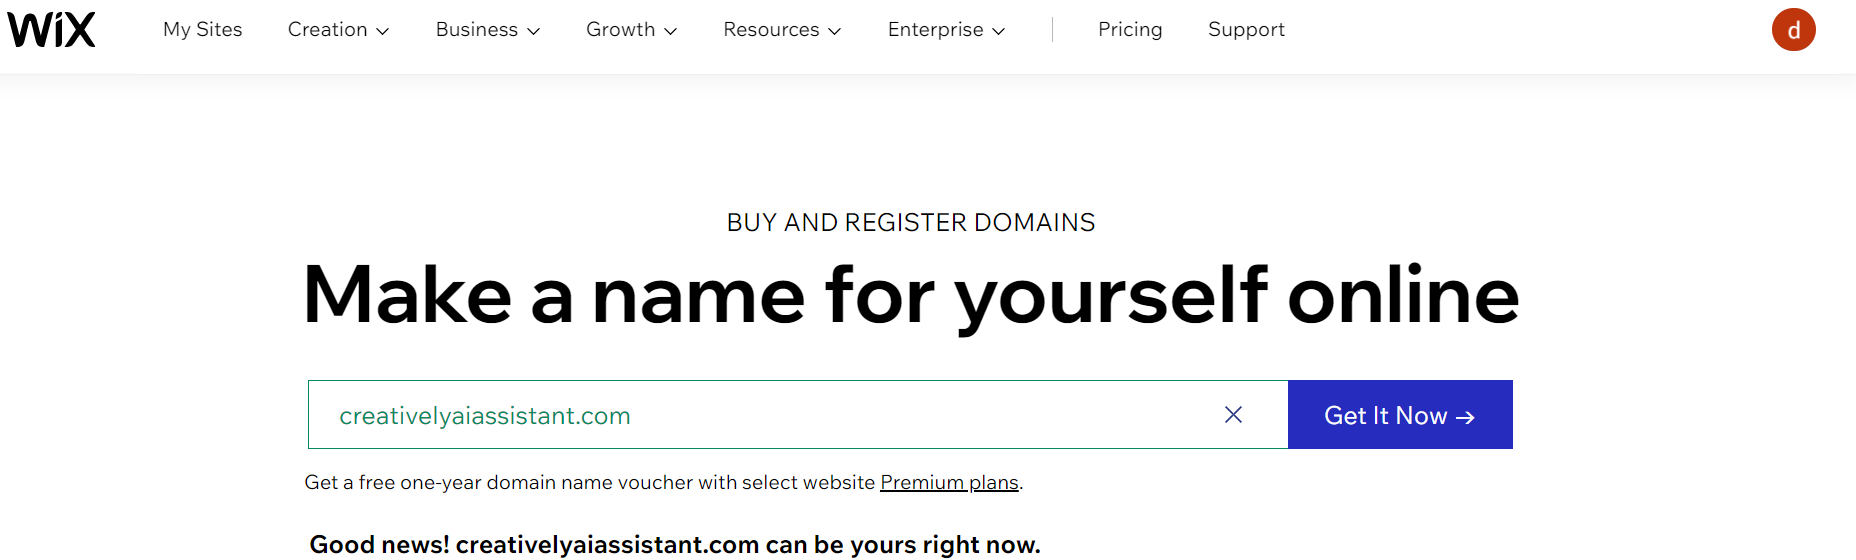 Wix Domain Name - Success